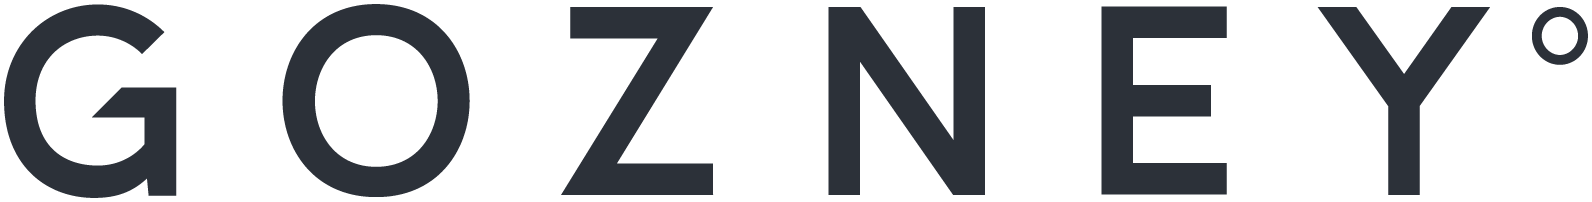 Logo Gozney